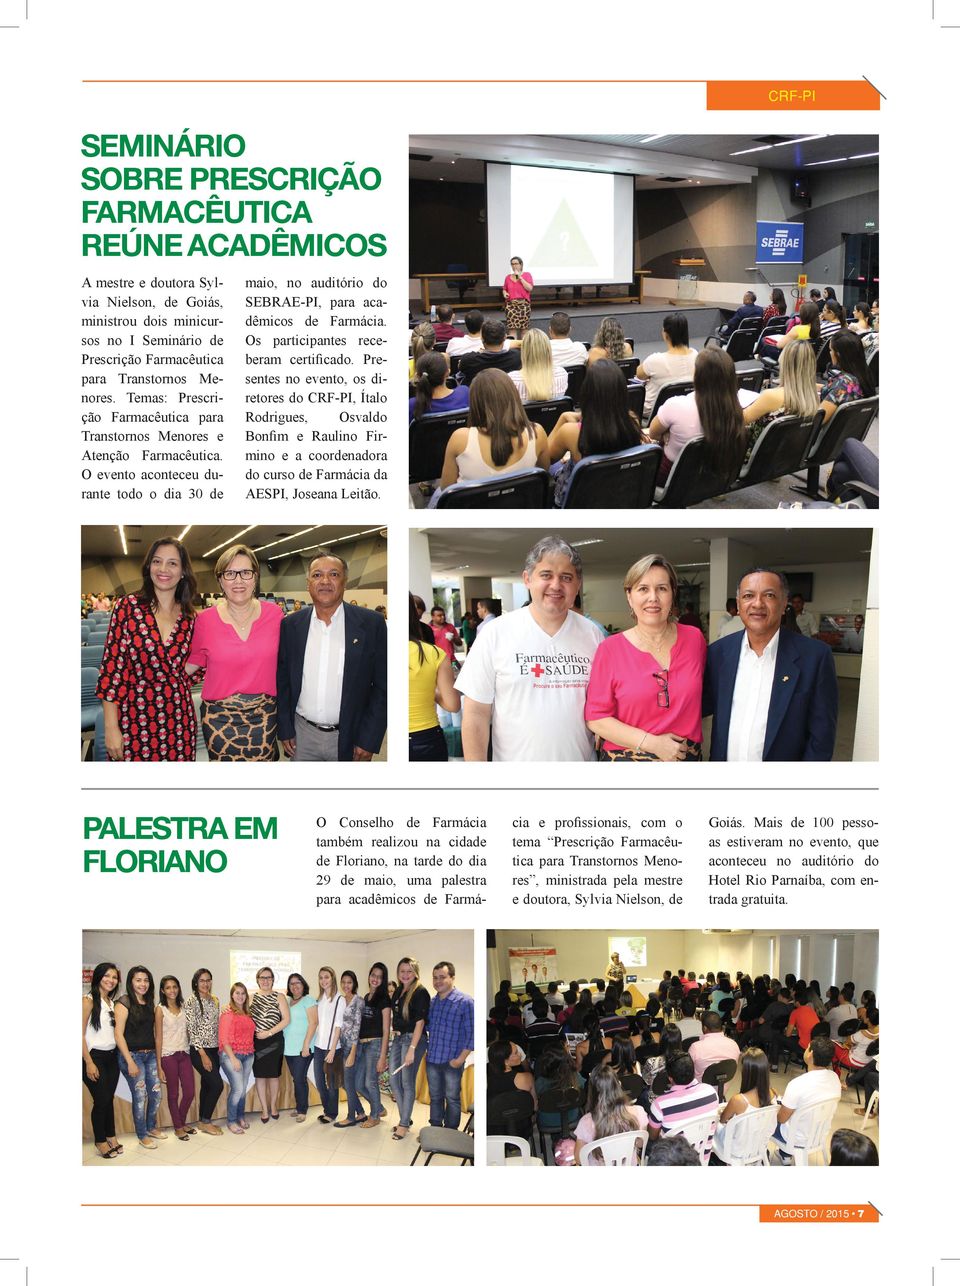 Os participantes receberam certificado. Presentes no evento, os diretores do CRF-PI, Ítalo Rodrigues, Osvaldo Bonfim e Raulino Firmino e a coordenadora do curso de Farmácia da AESPI, Joseana Leitão.